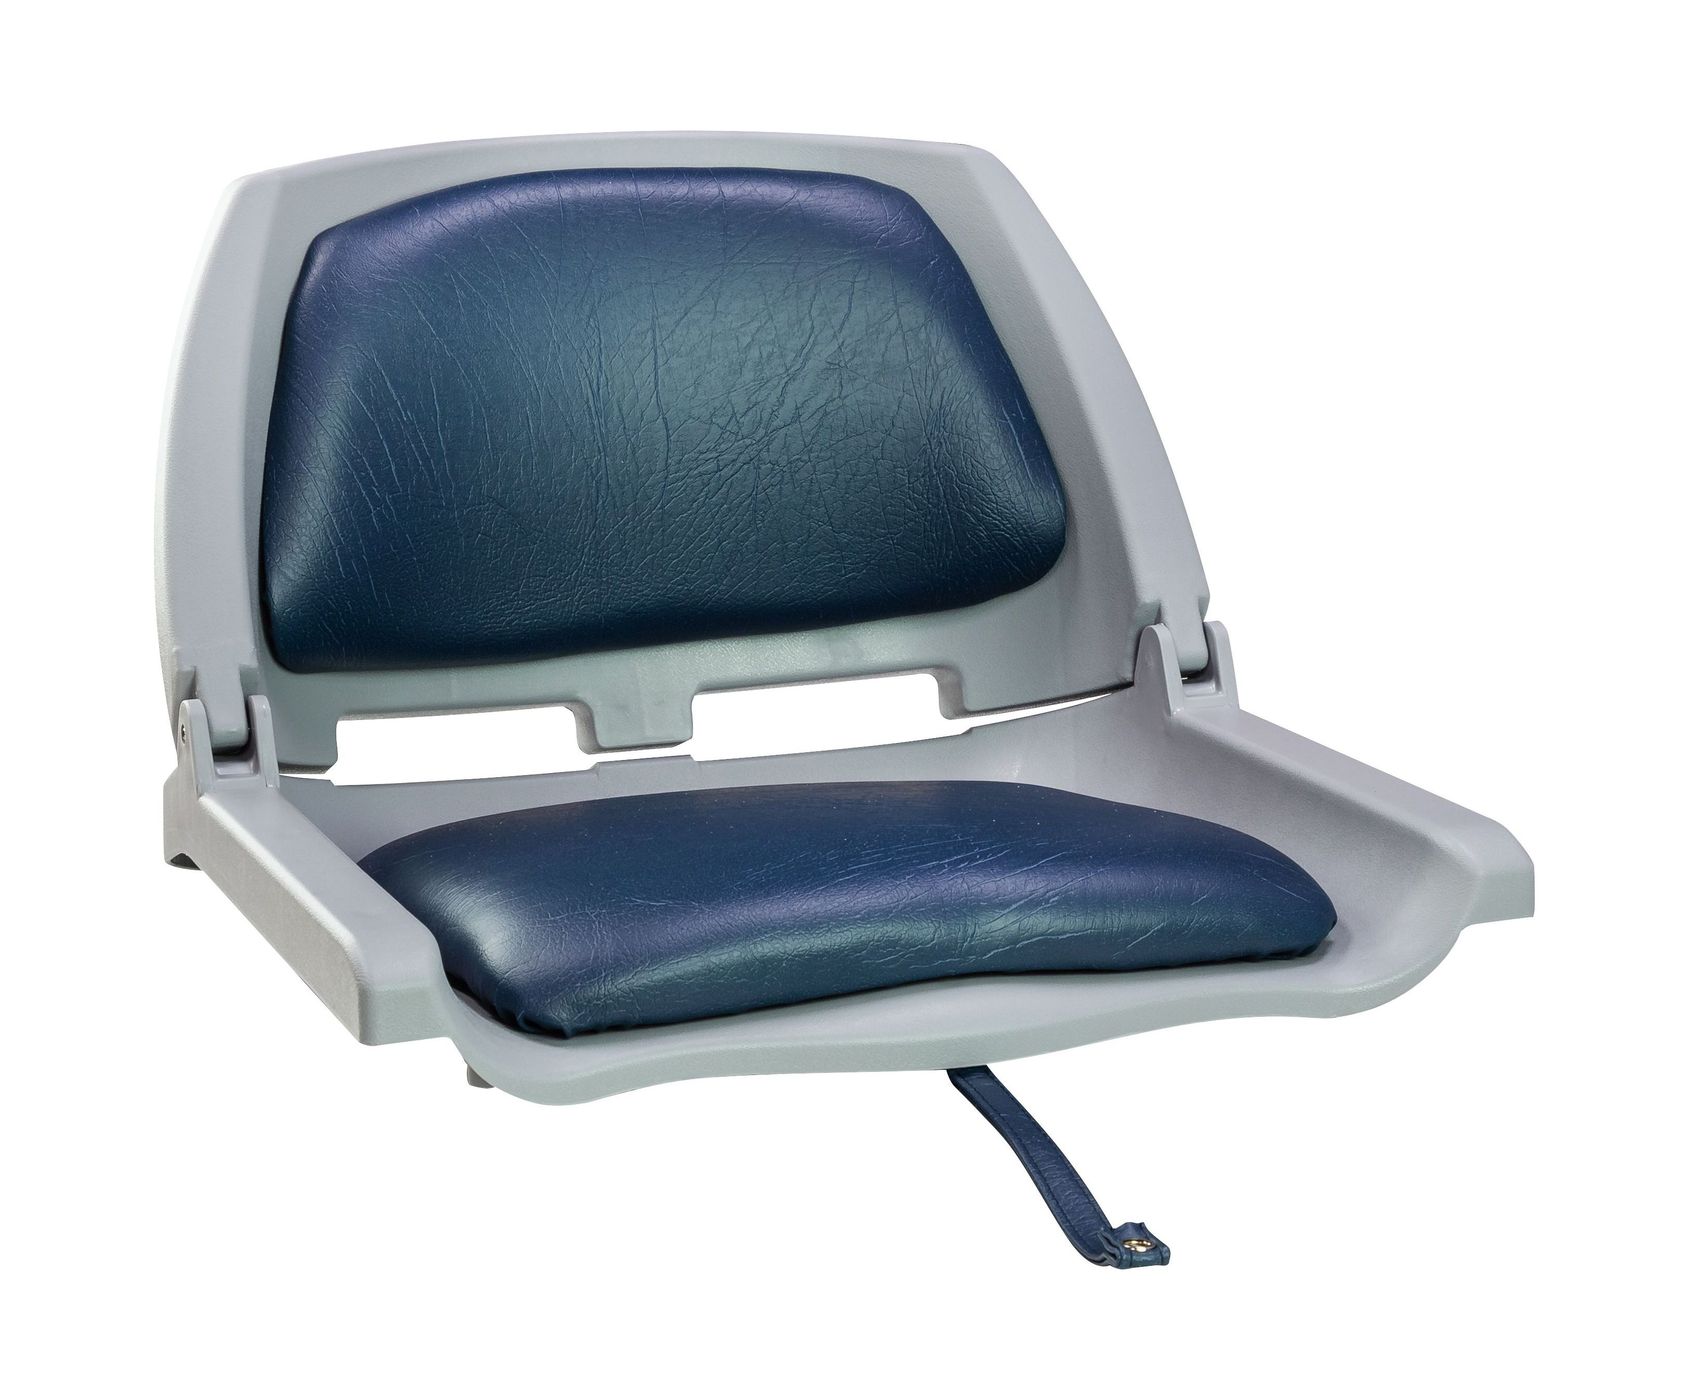 Кресло складное мягкое TRAVELER, цвет серый/синий 1061112C кресло мягкое складное обивка винил синий marine rocket 75103b mr